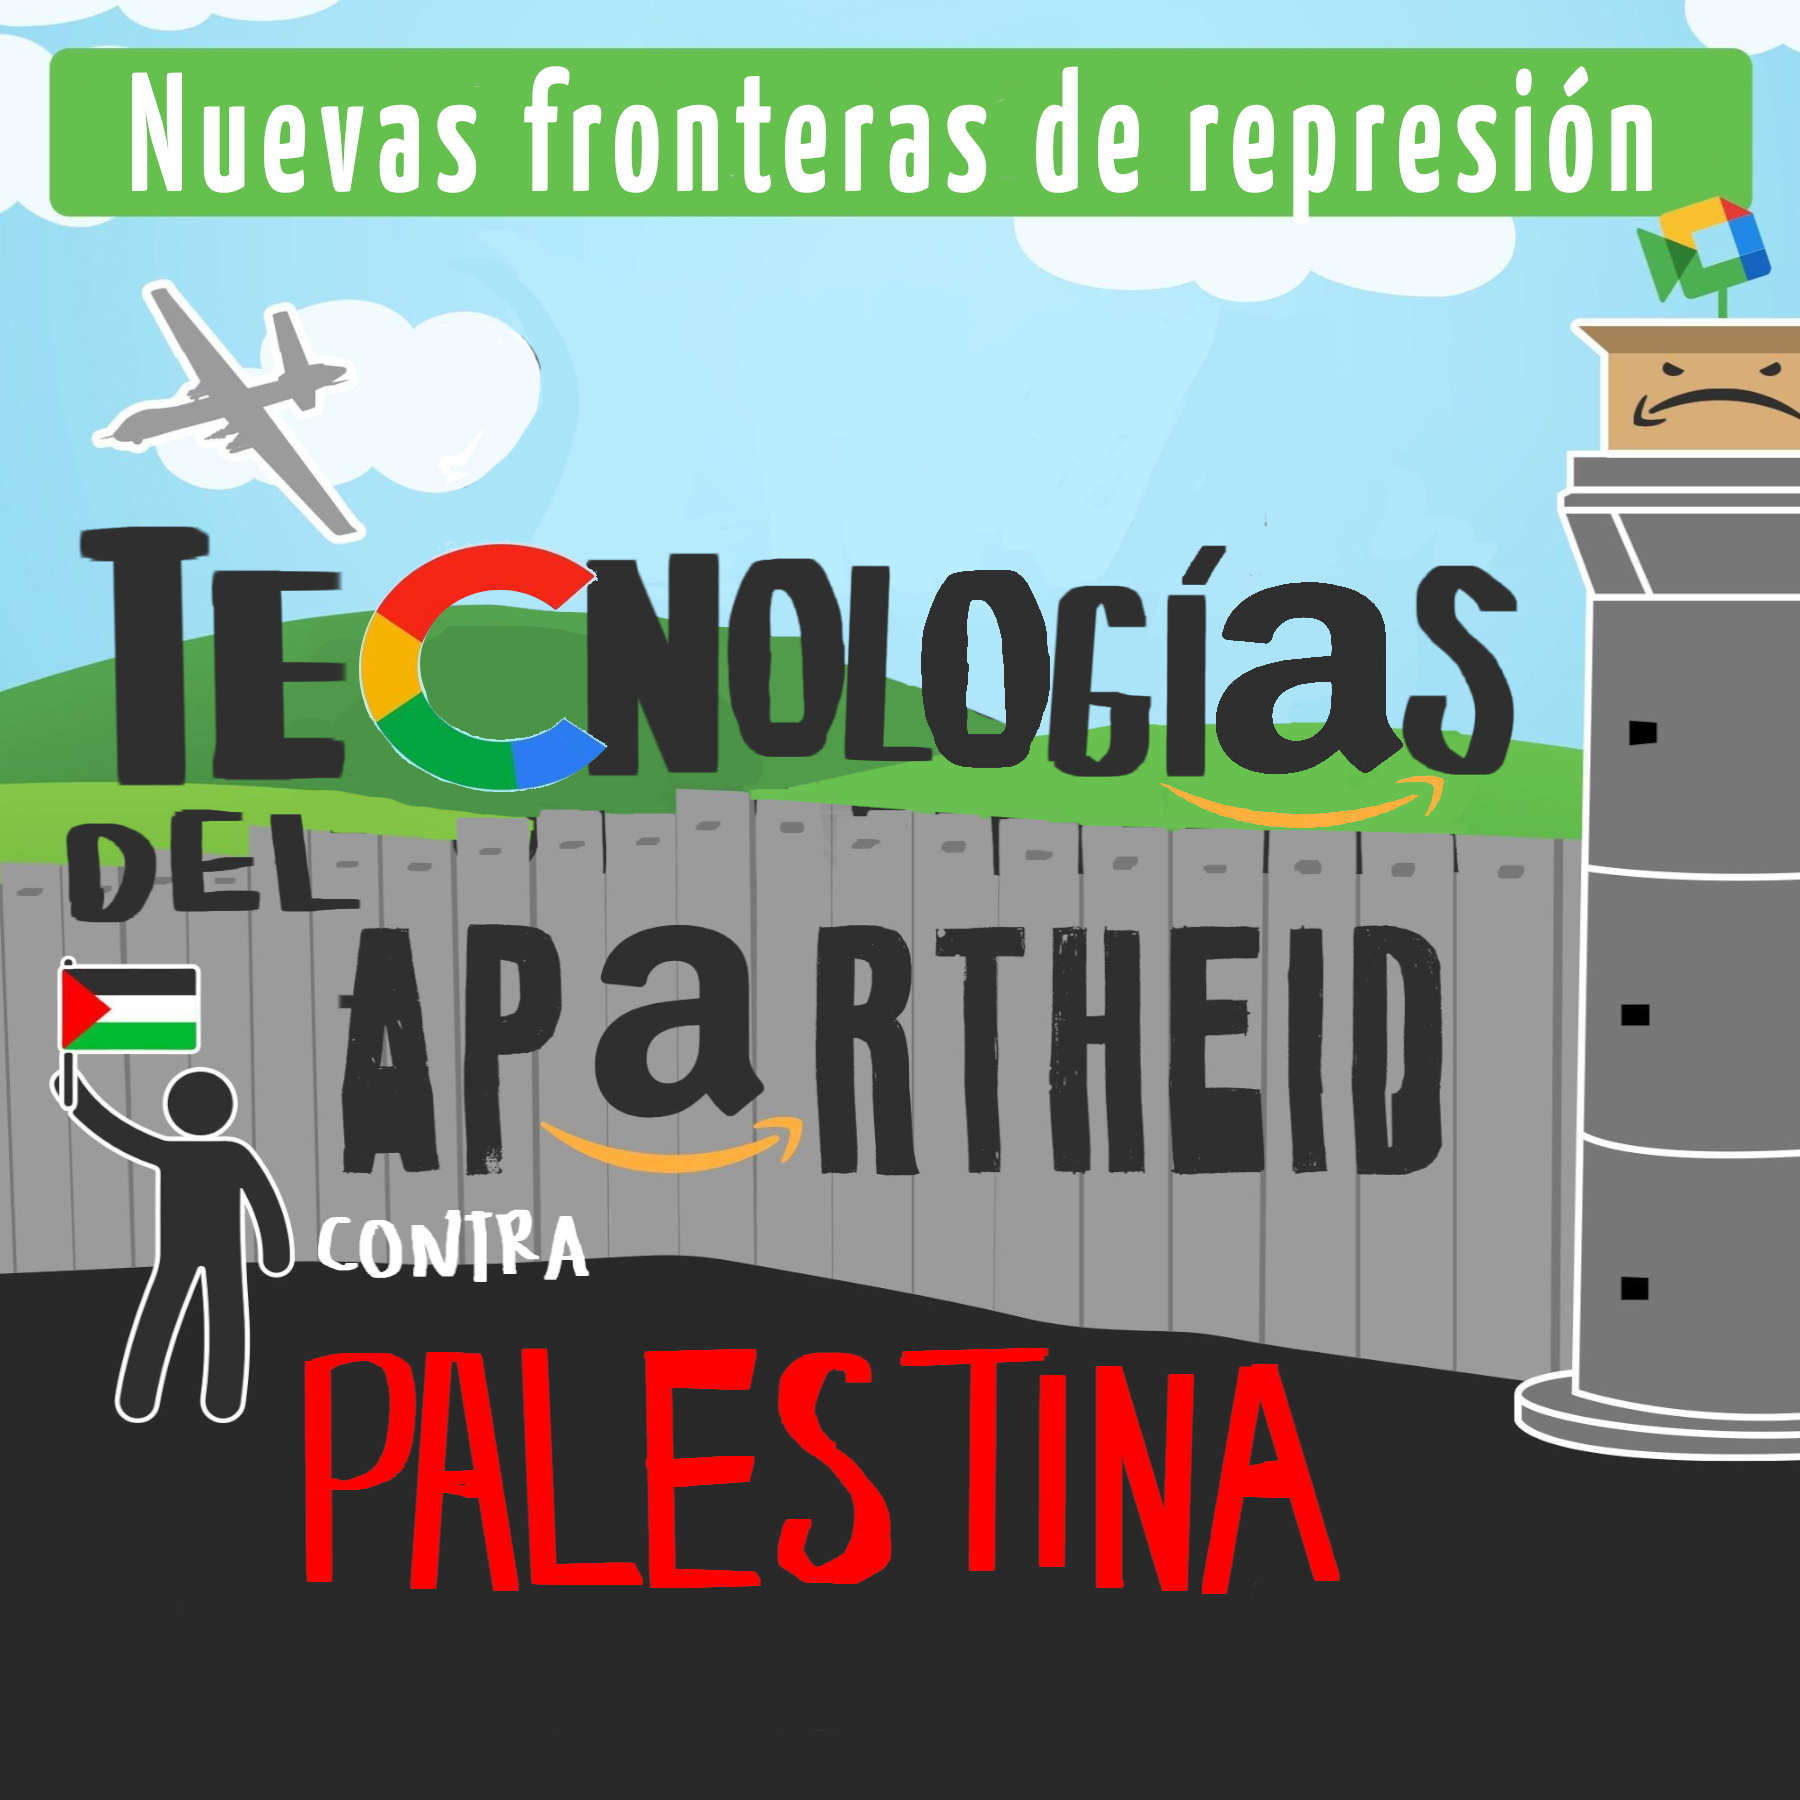 Amazon y Google, cómplices del apartheid israelí